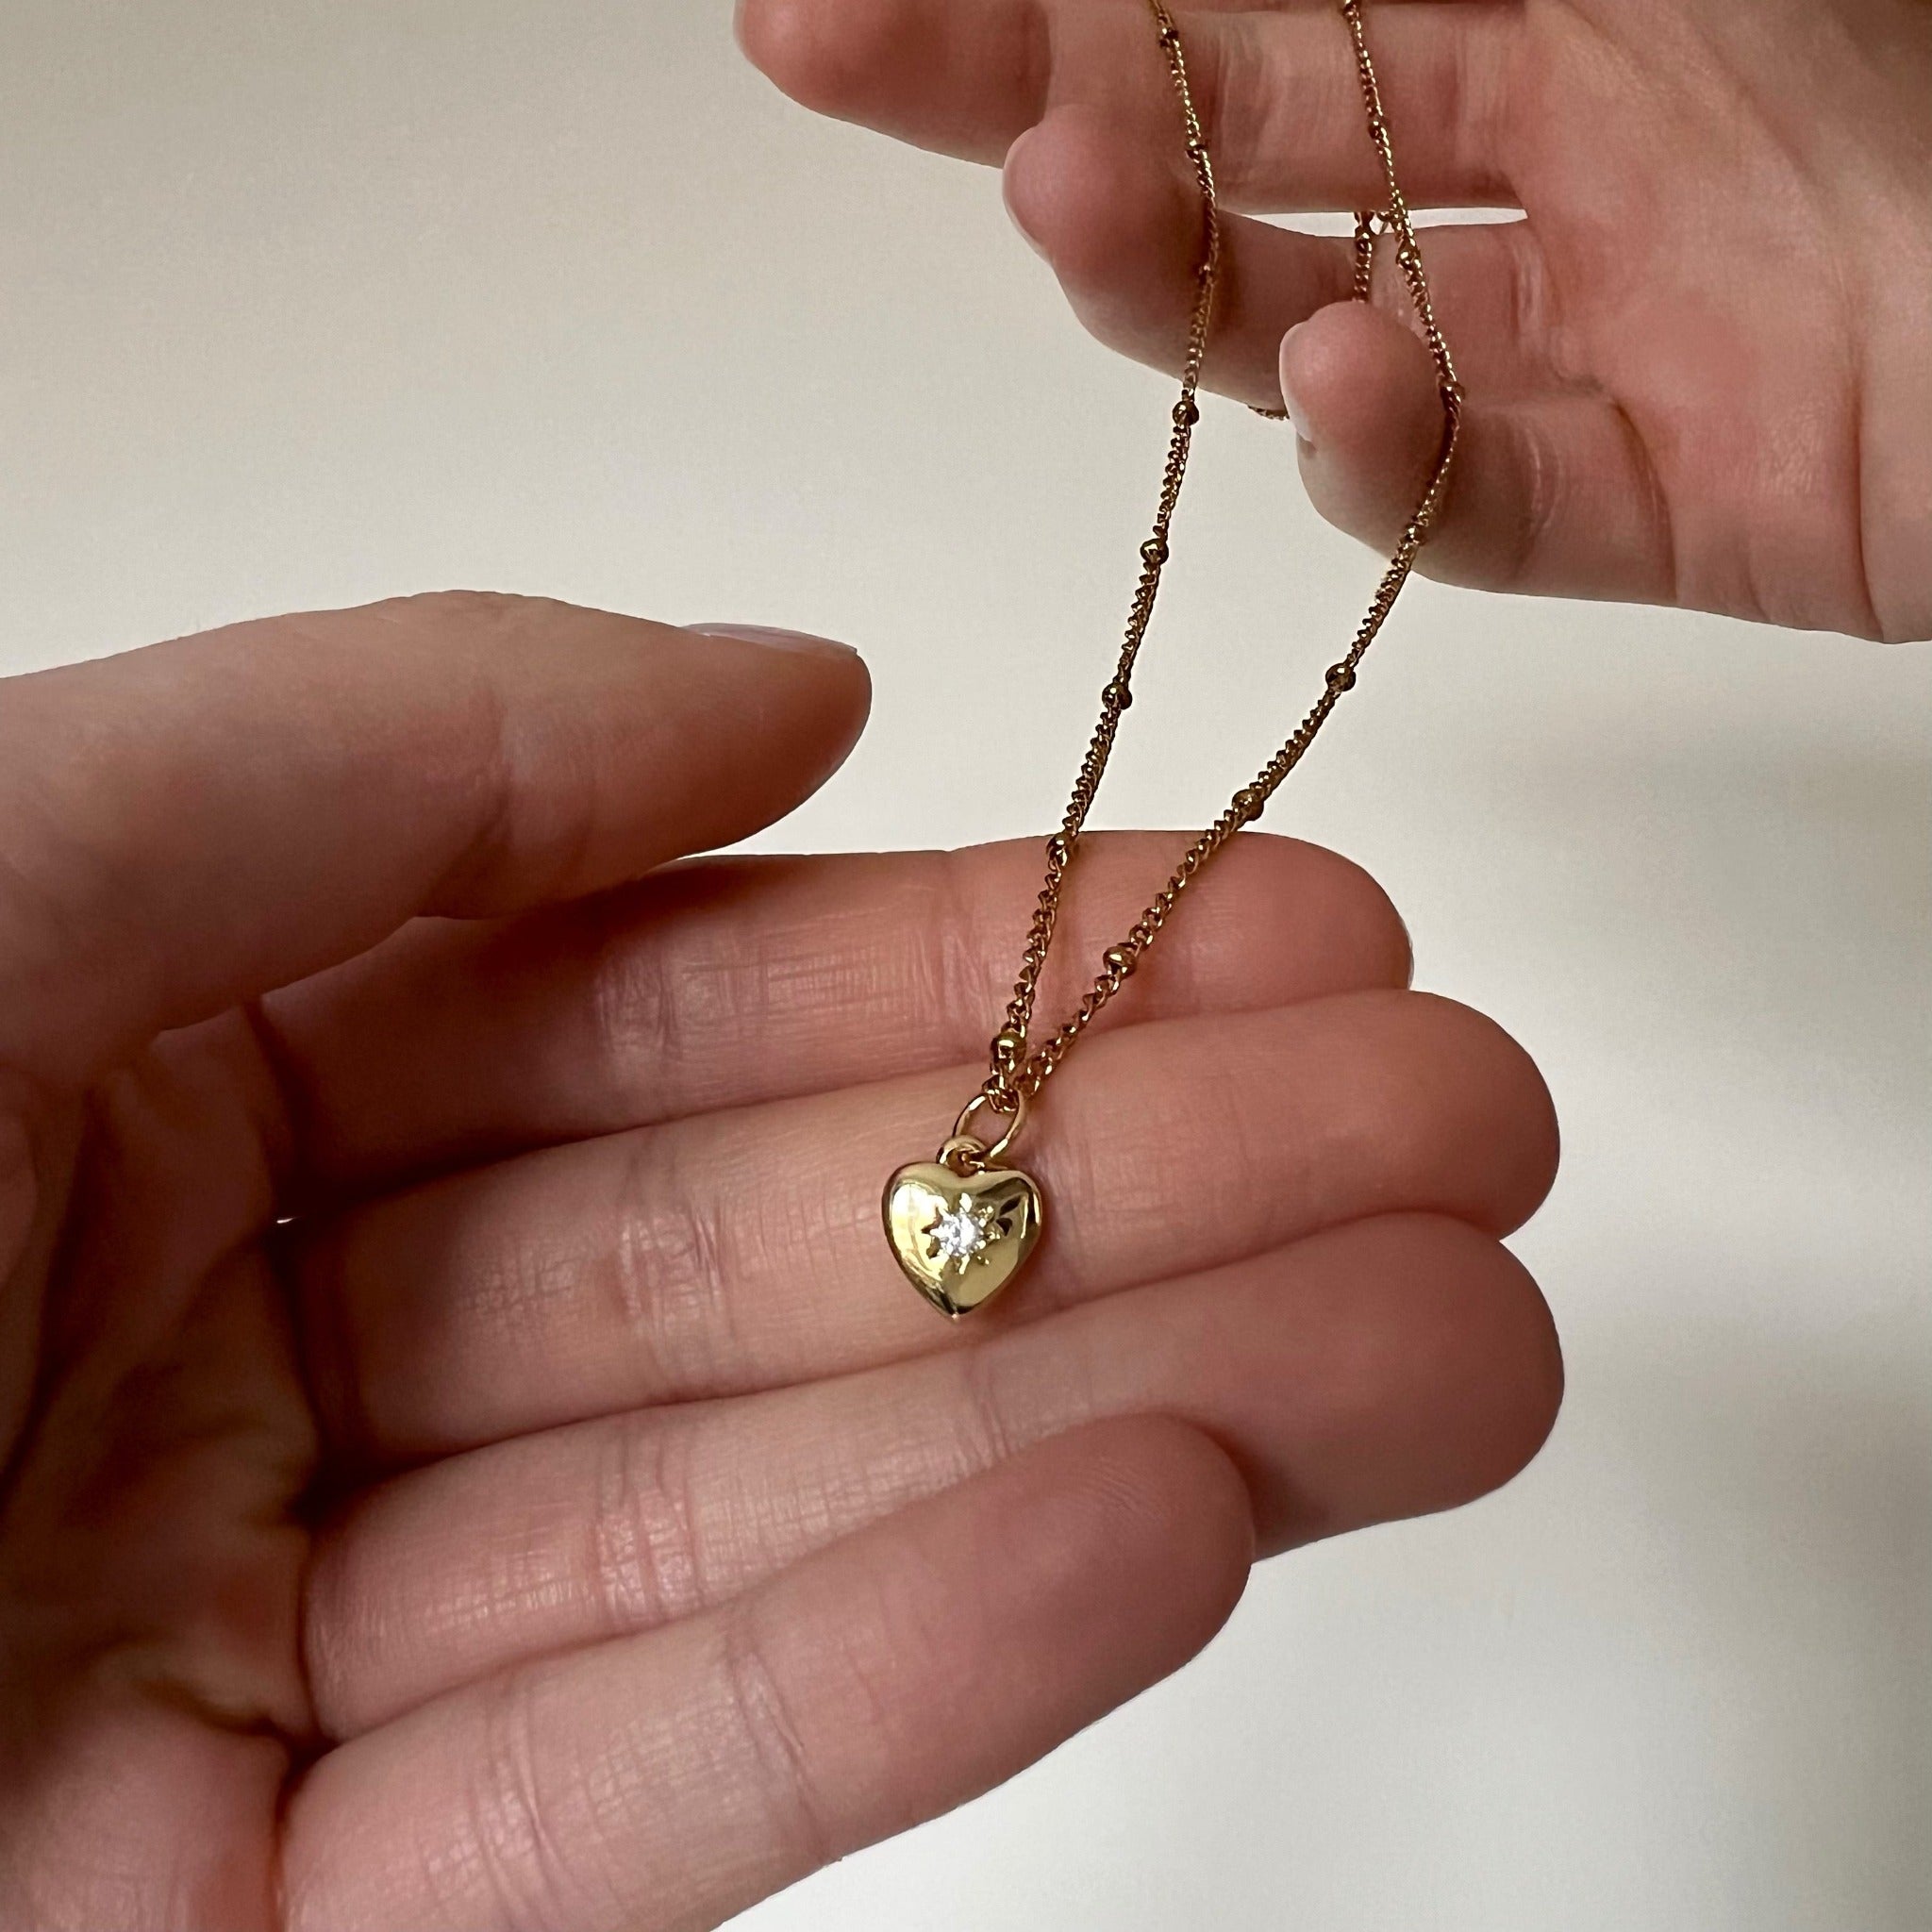 Minimalistyczny złoty naszyjnik z zawieszką w kształcie serca, w której znajduje się cyrkonia w kształcie gwiazdki.